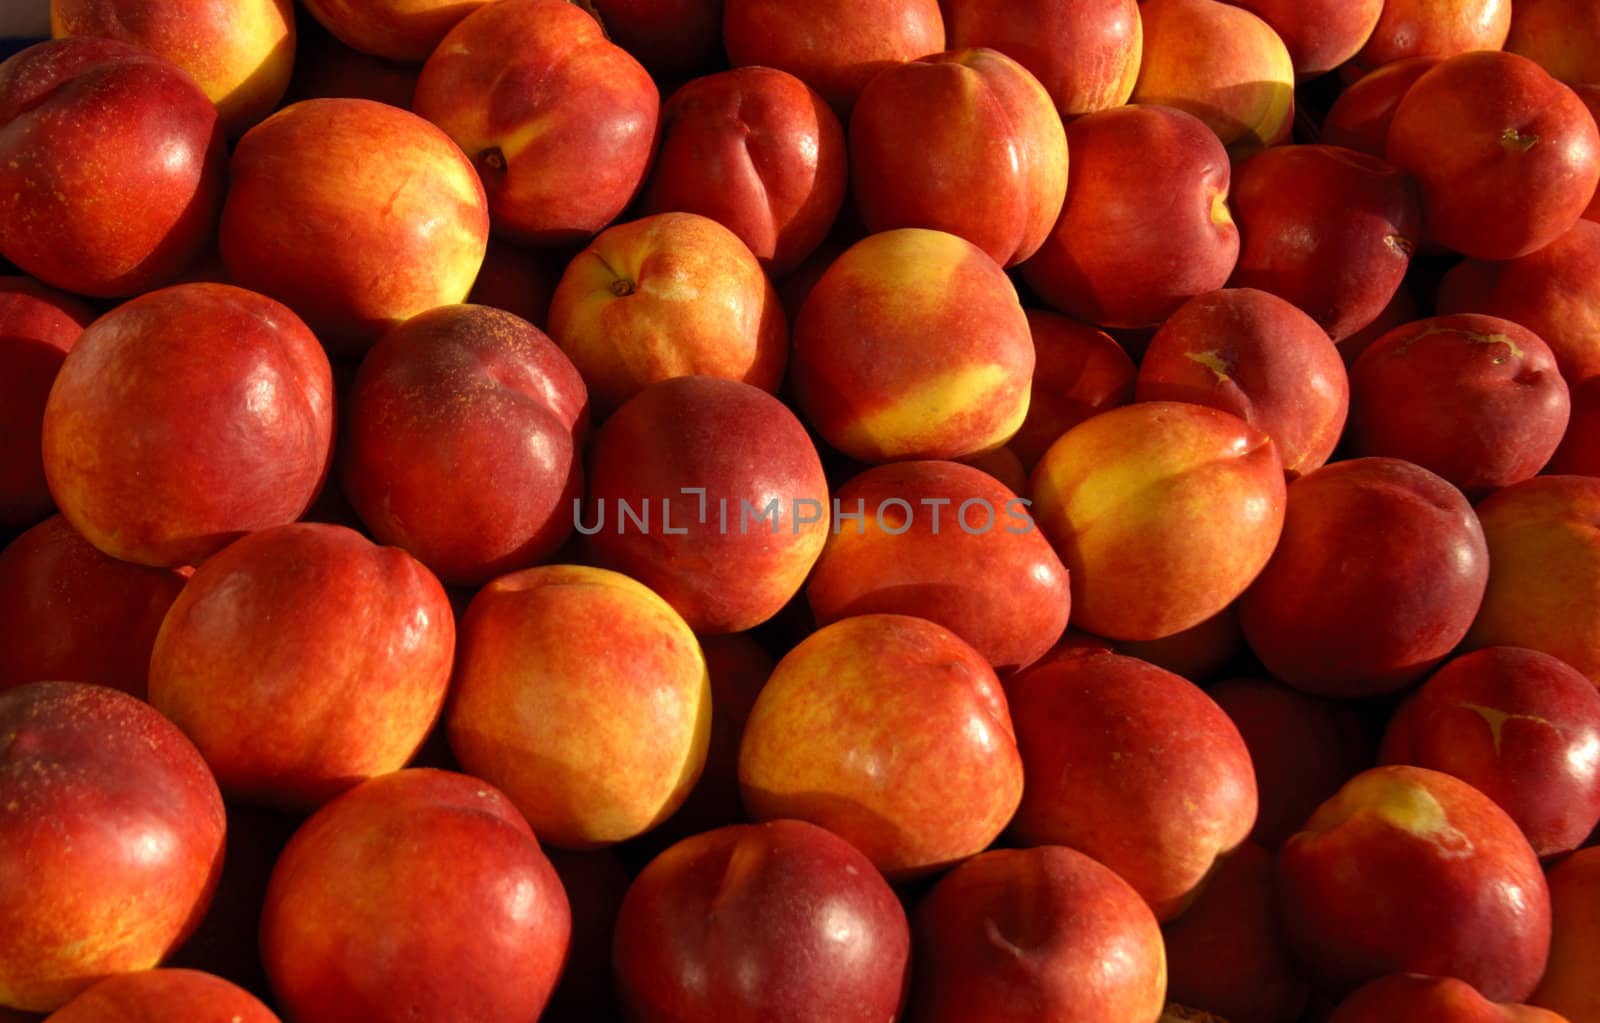 Peaches by Bateleur